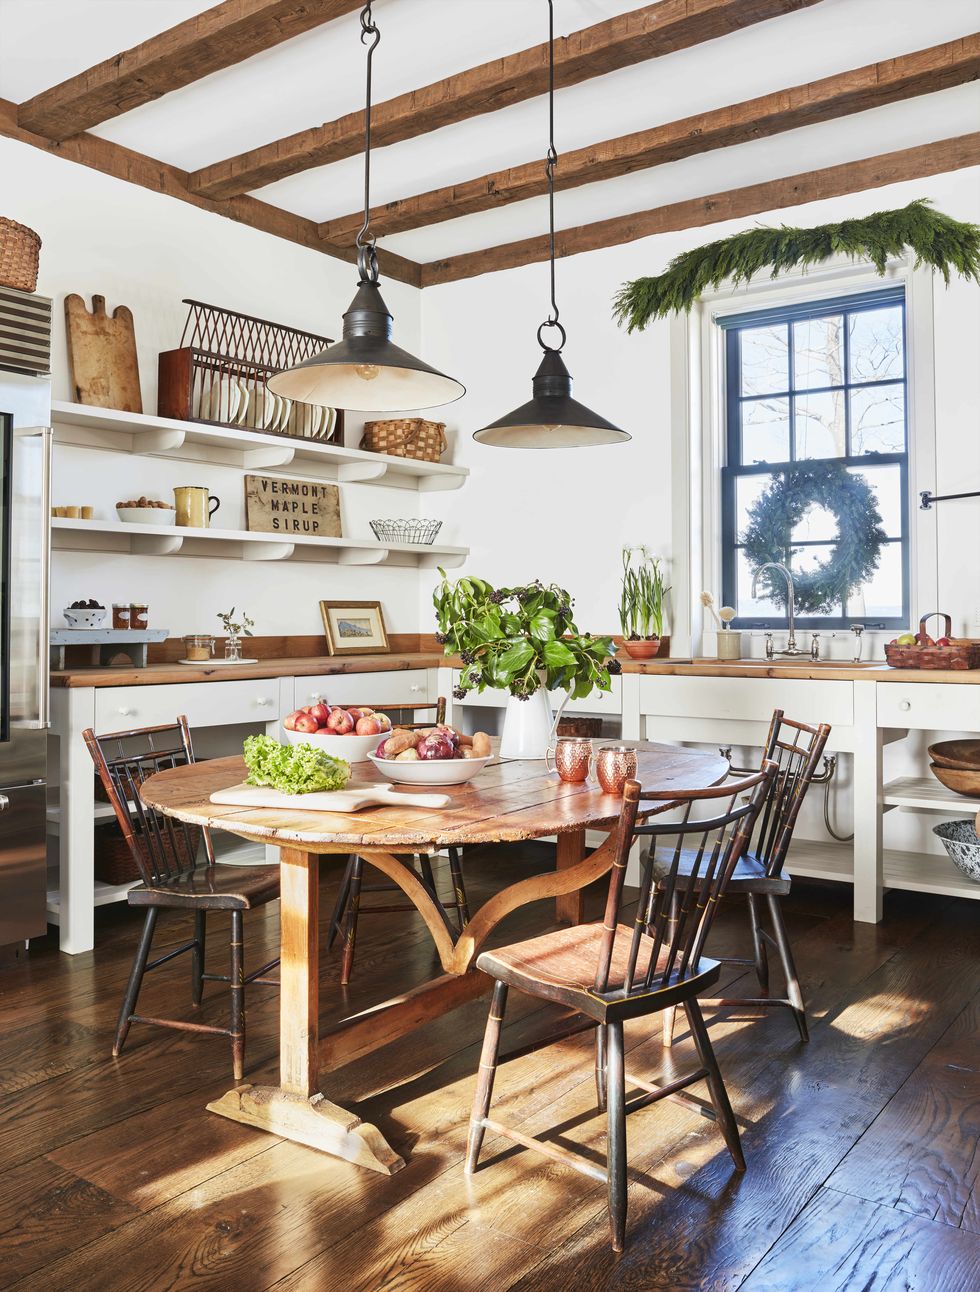 50 Best Kitchen Ideas 2020 - Modern & Rustic Kitchen Decor Ideas